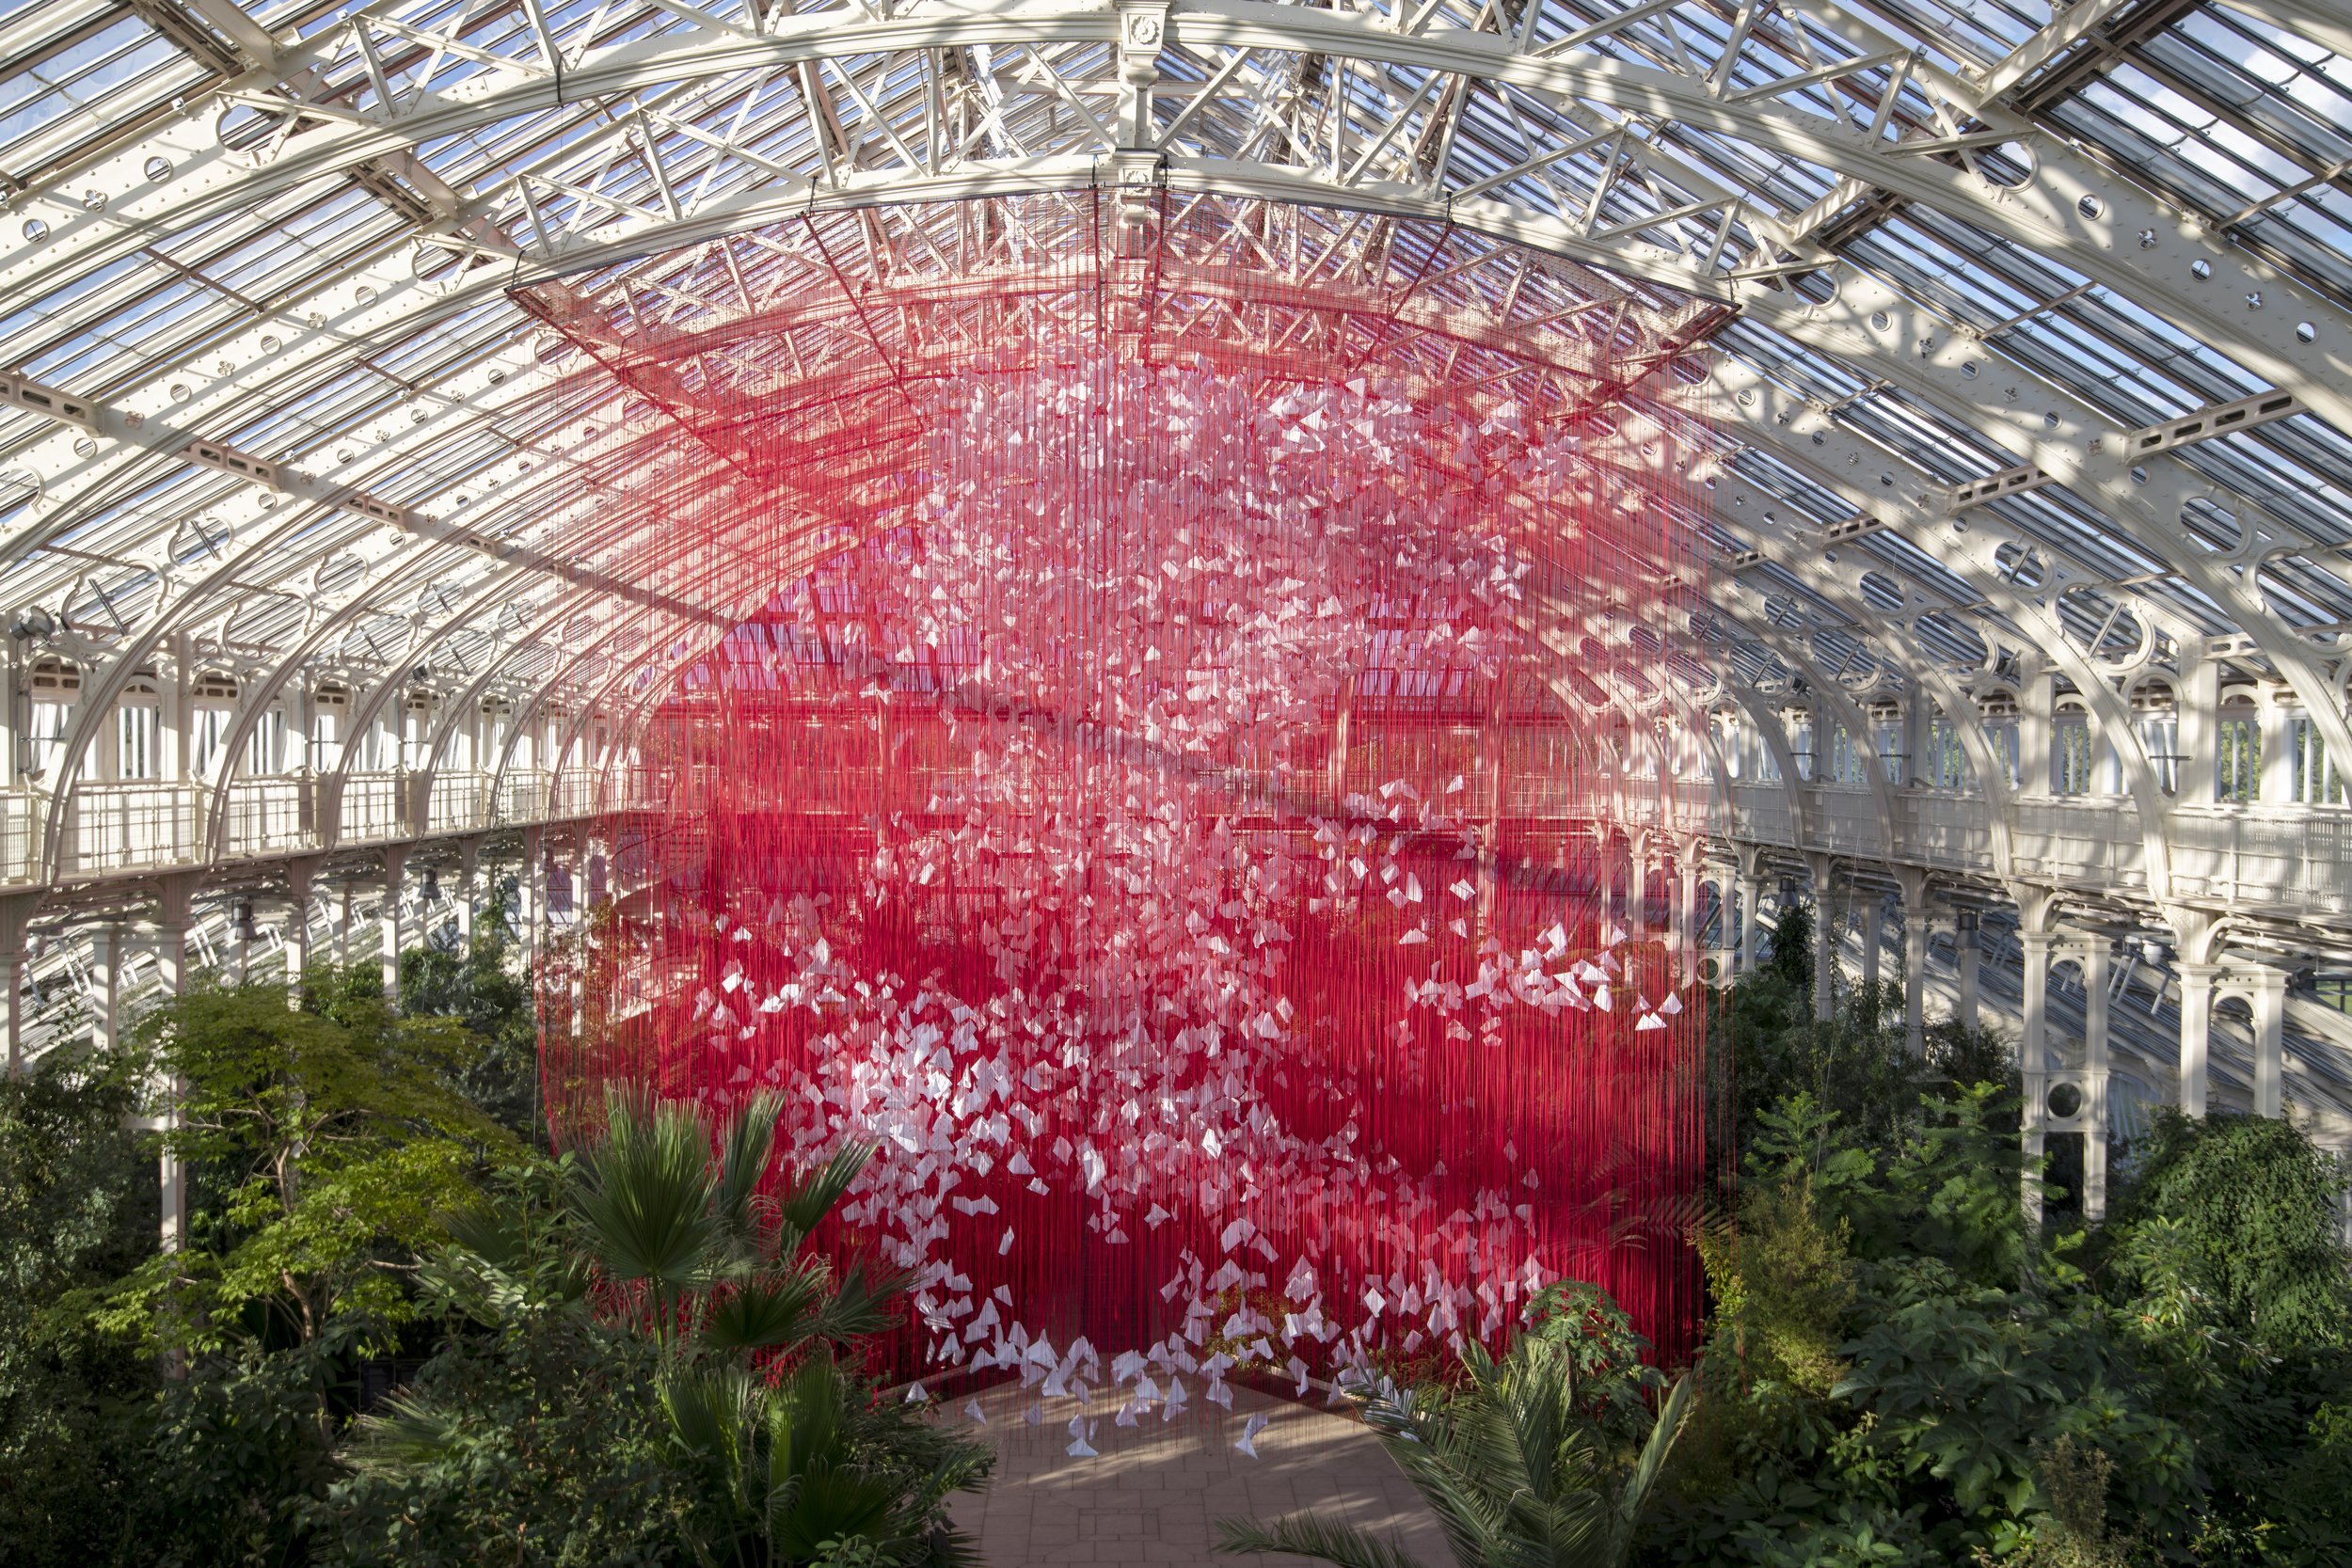  “One Thousand Springs” 2021, Royal Botanic Gardens at Kew, London, UK, photo by Jeff Eden 